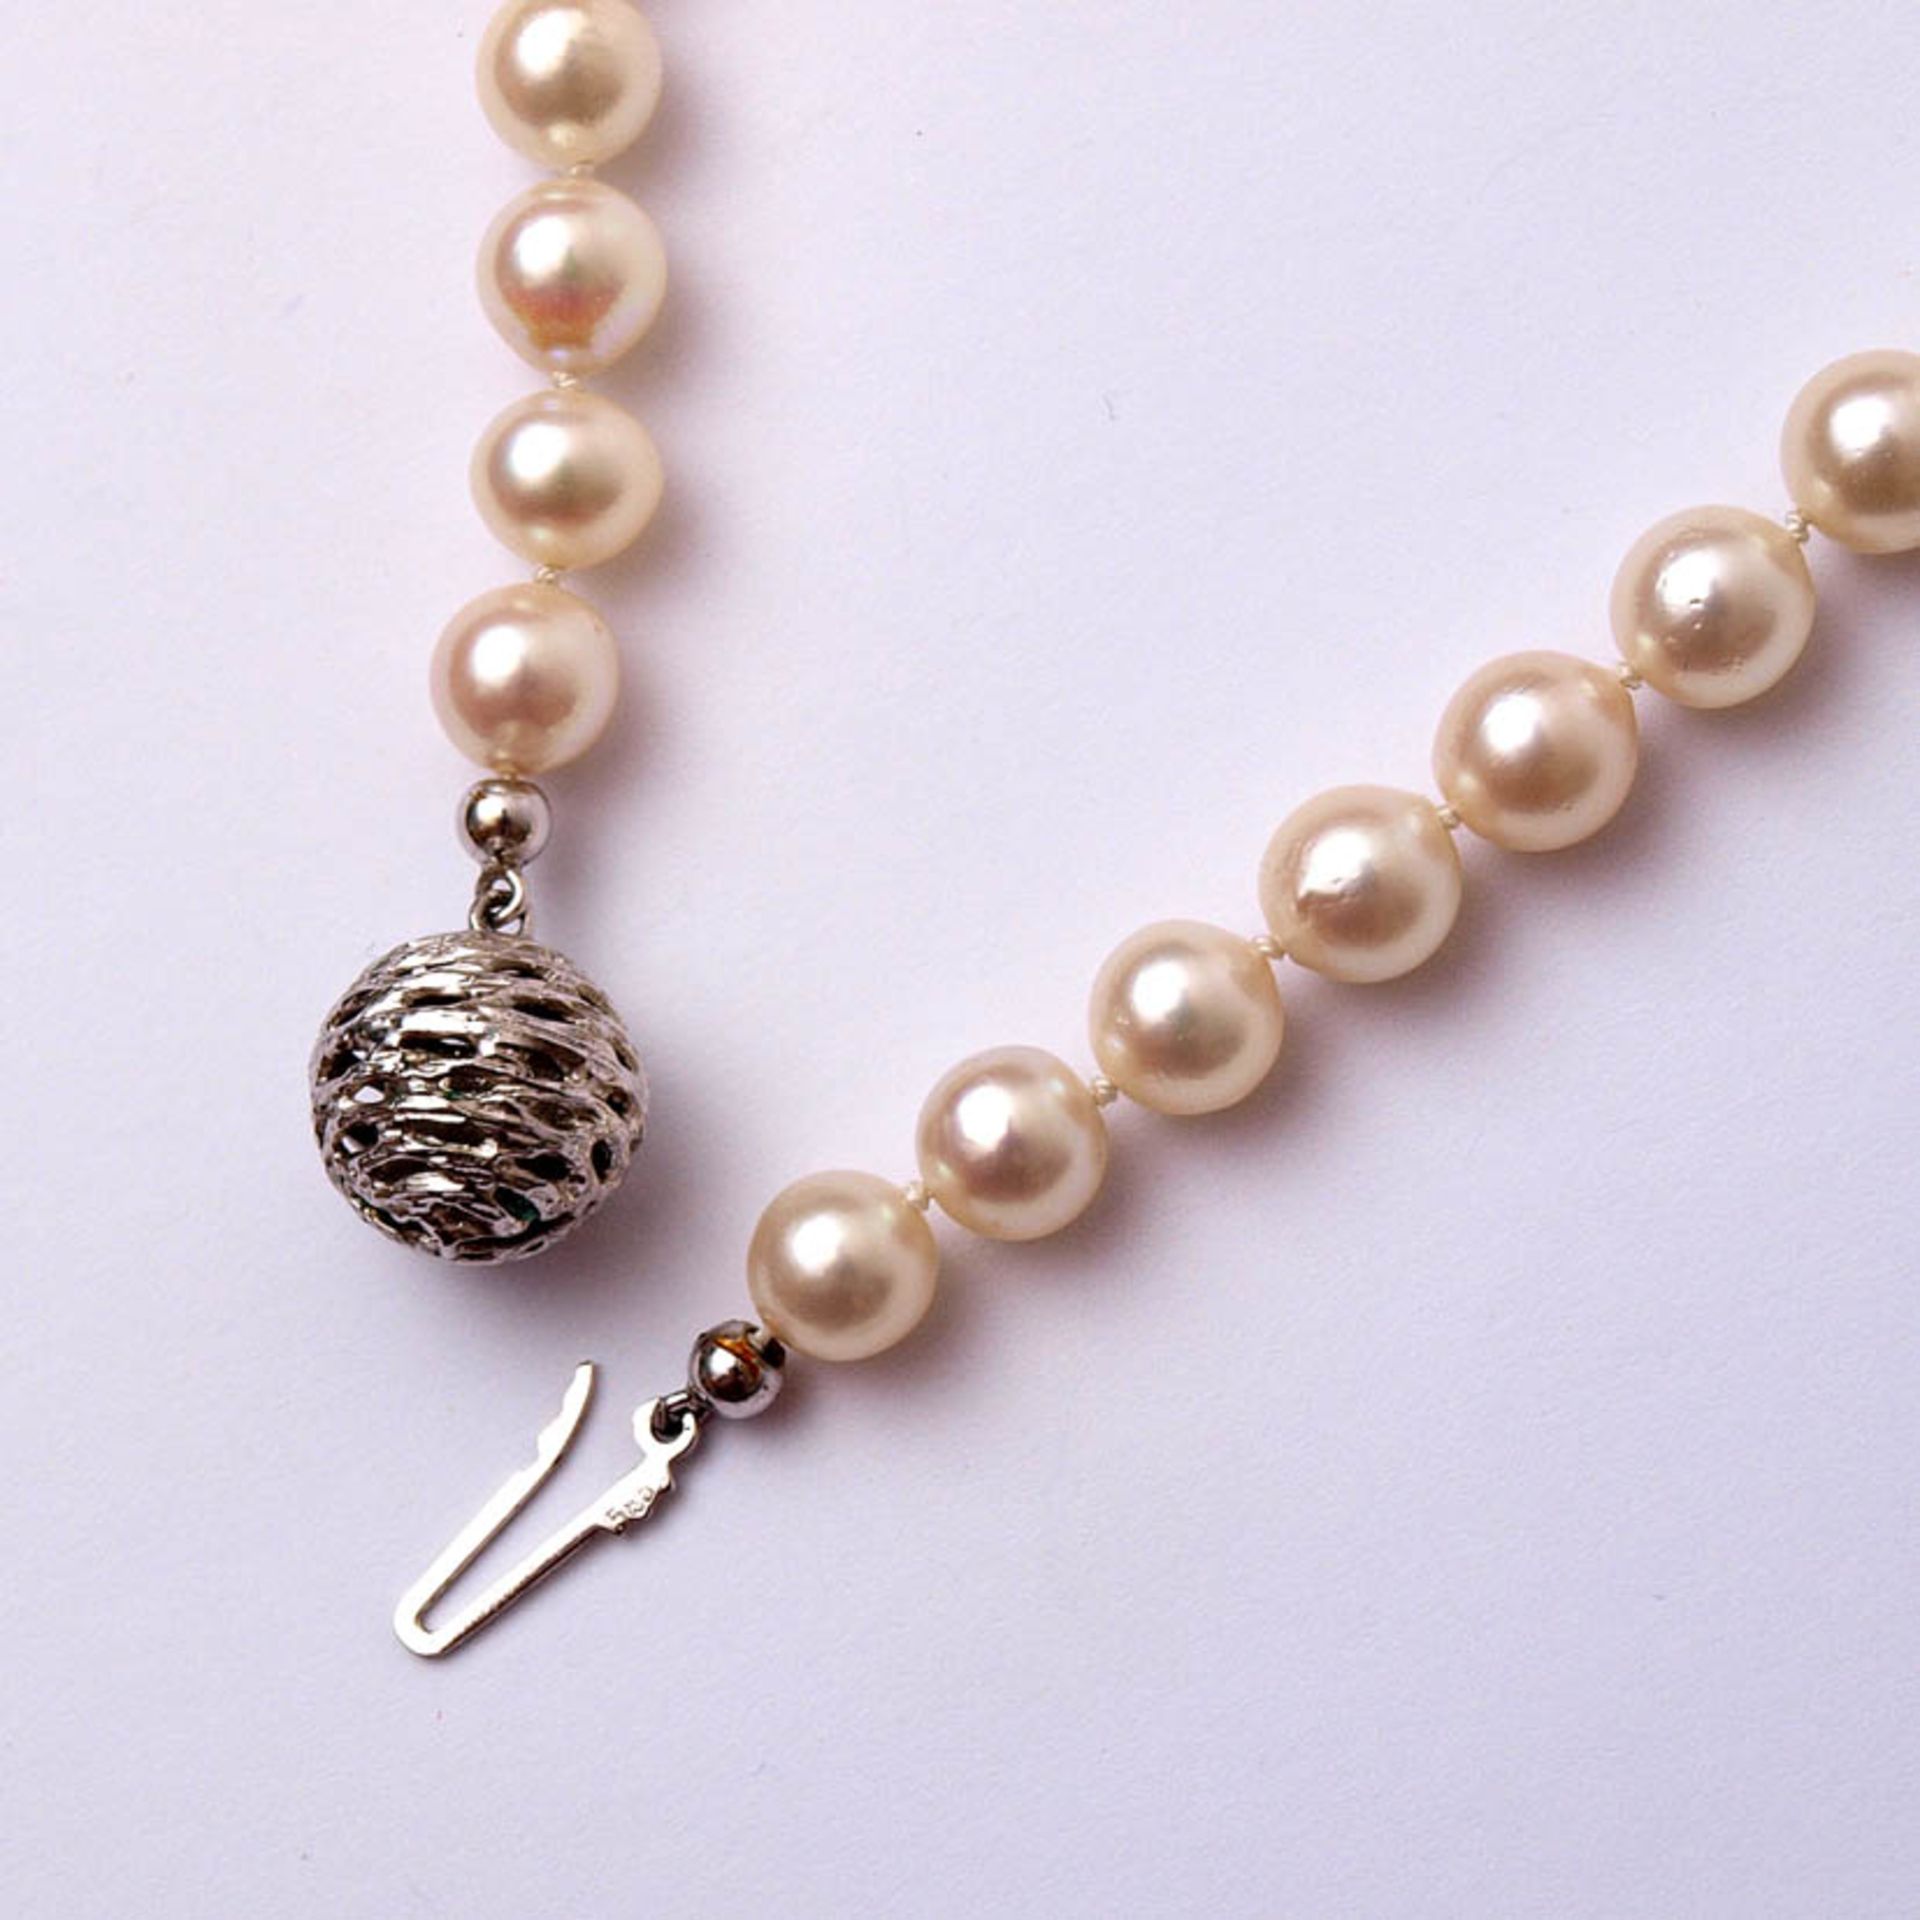 Zuchtperlkette83 Perlen von feiner Farbe, teilweise minimal barock. Handgearbeitetes, kugeliges - Bild 2 aus 2